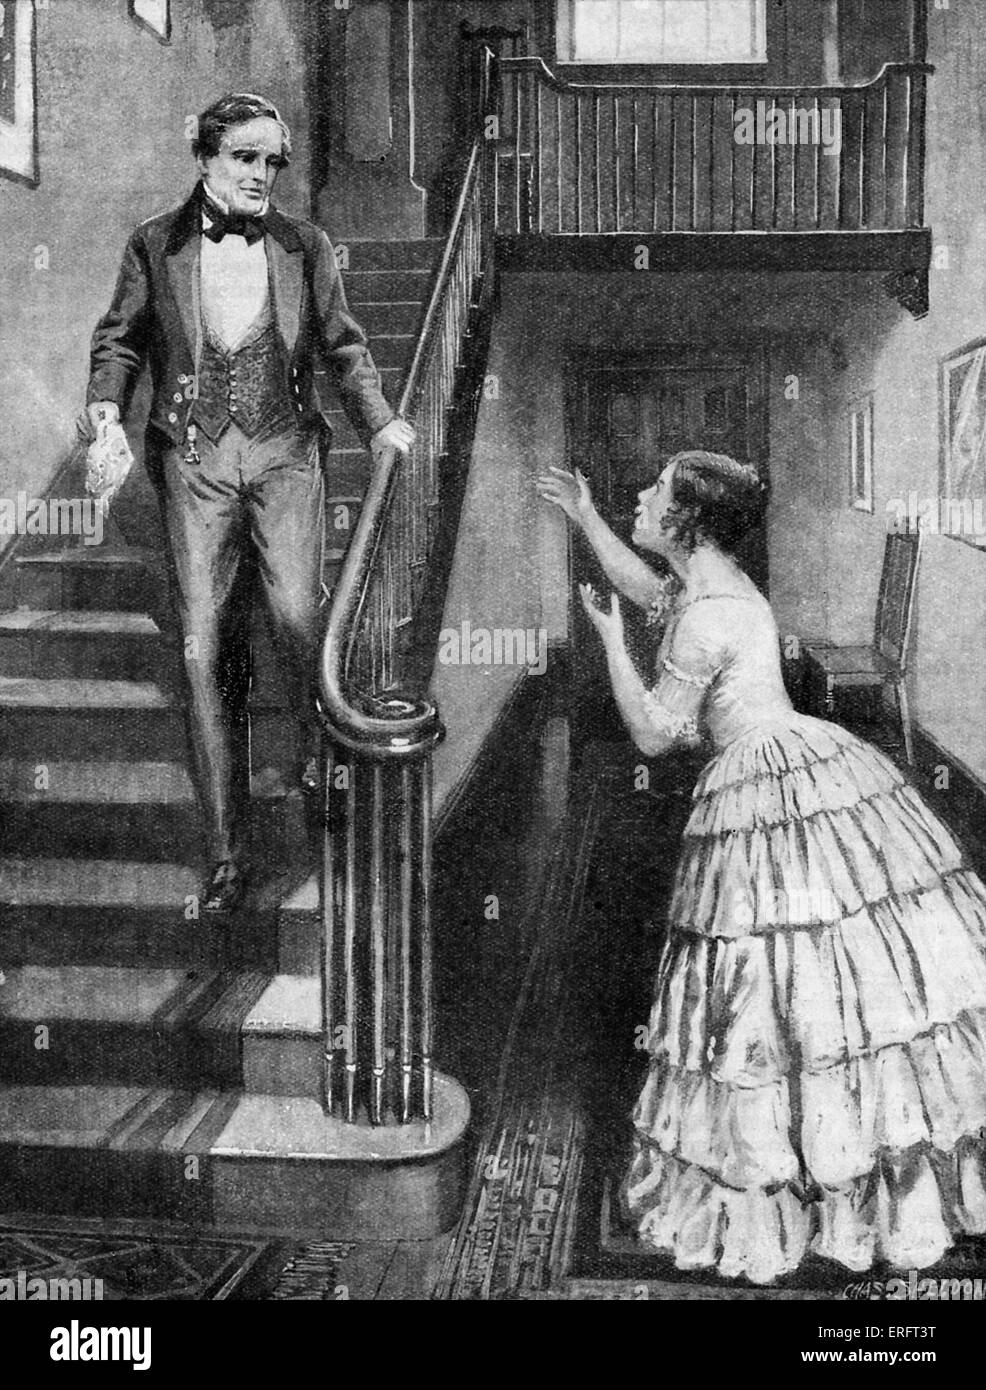 Samuel Morse, US-amerikanischer Maler und Schöpfer von einem einzelnen Draht telegraph System. Bildunterschrift lautet: "Morse hört die wunderbare Nachricht". Stockfoto